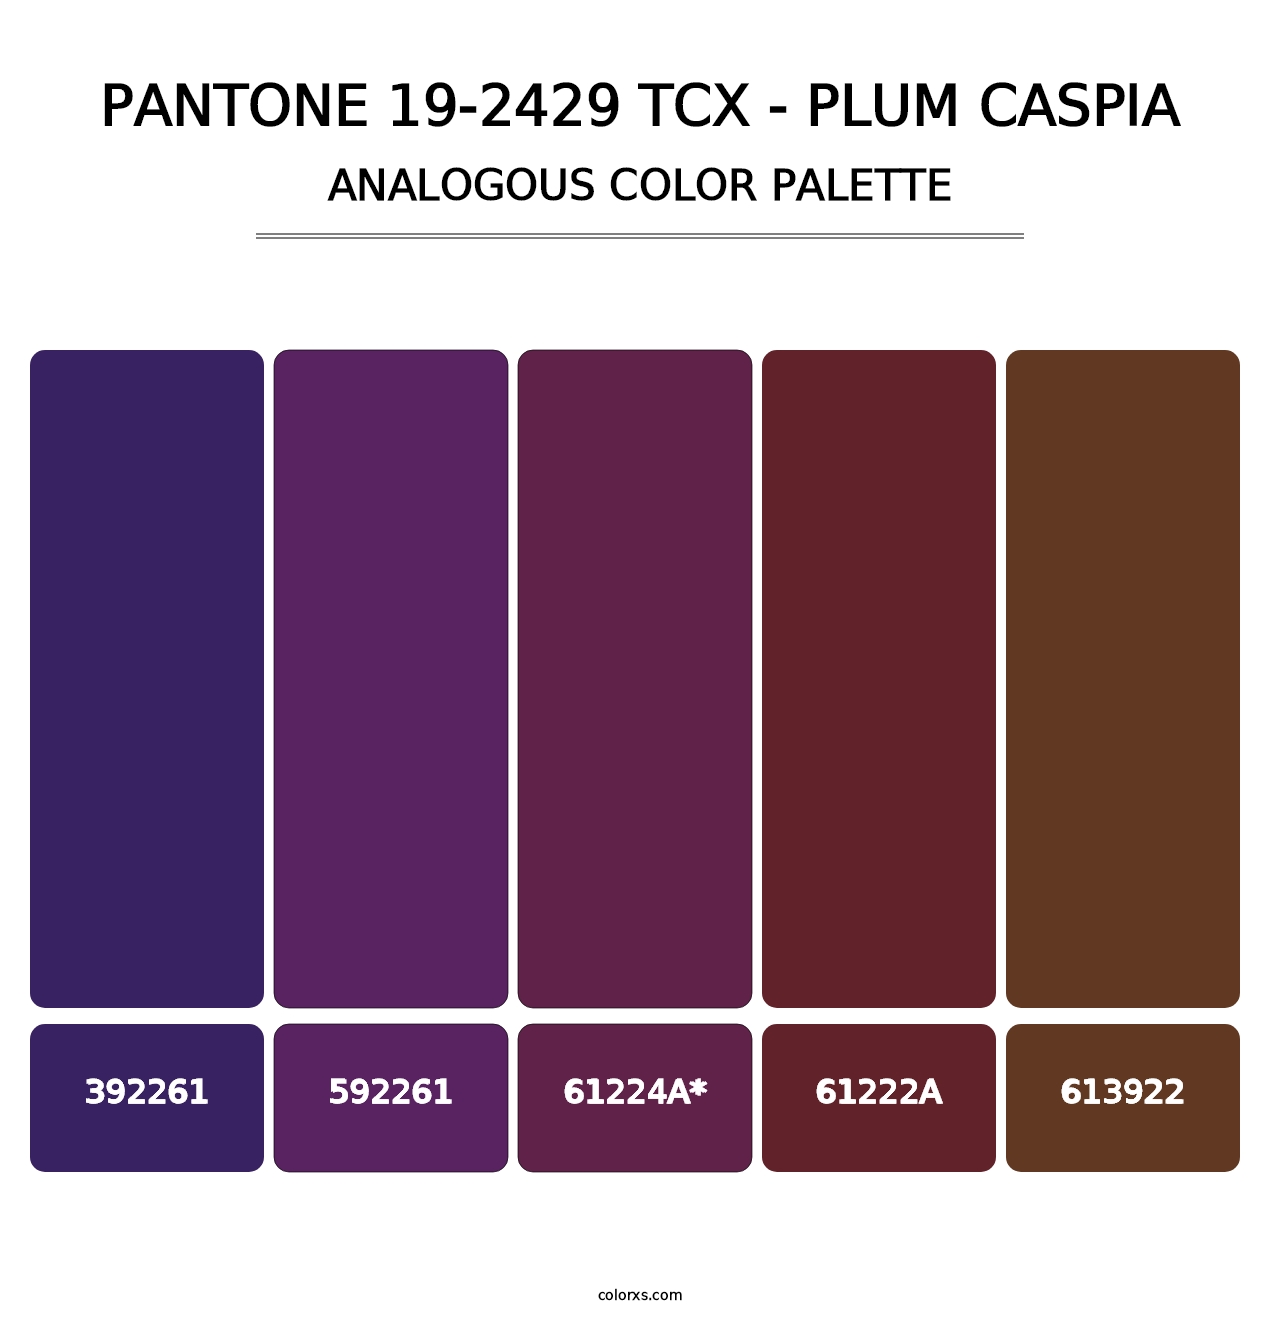 PANTONE 19-2429 TCX - Plum Caspia - Analogous Color Palette